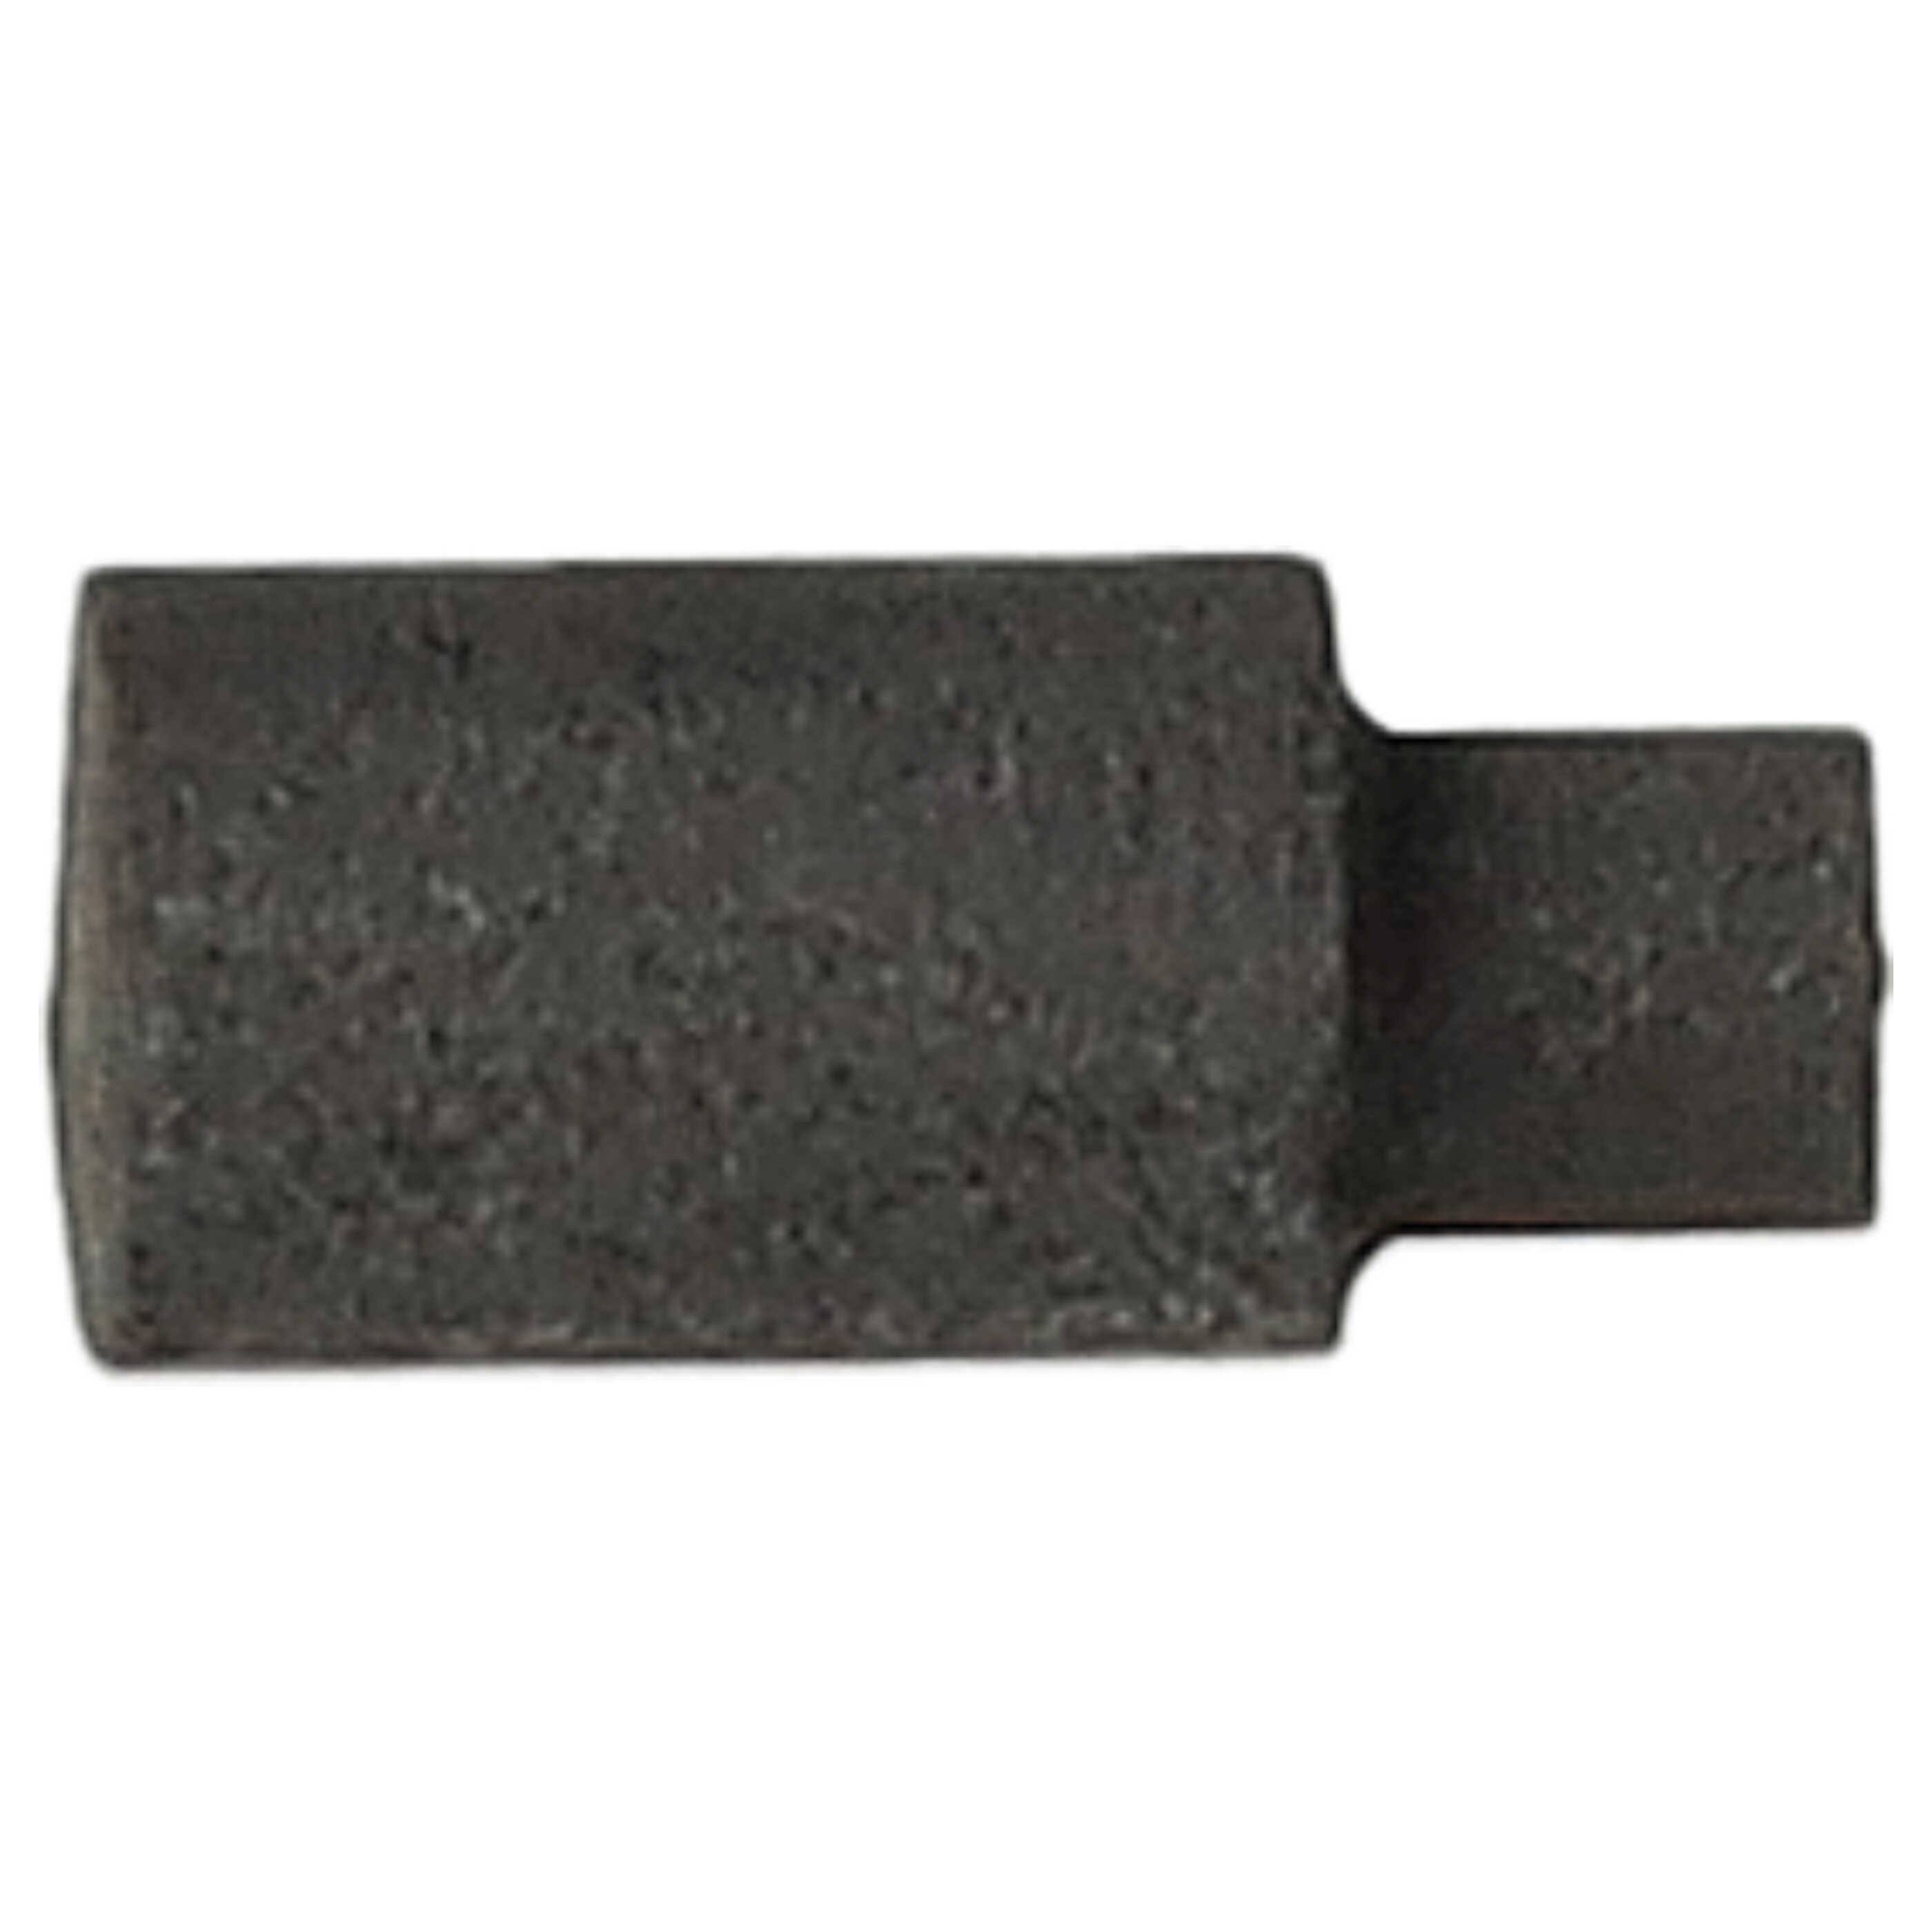 2x Spazzola carbone sostituisce Roco 89743 per utensili, 3 x 2 x 6,5 mm